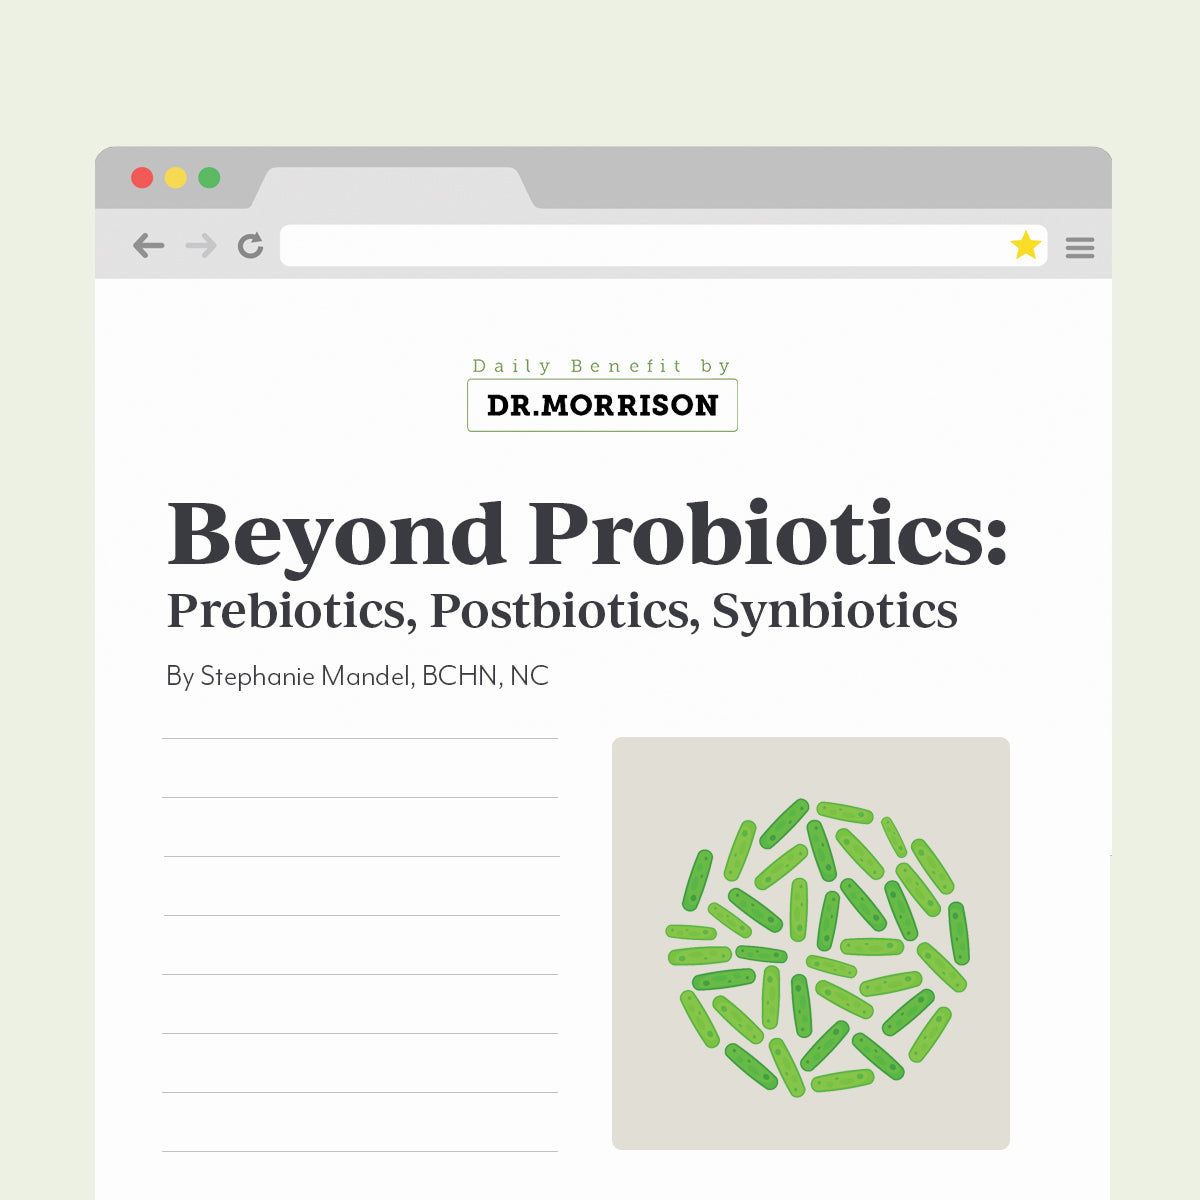 Beyond Probiotics: Prebiotics, Postbiotics, Synbiotics